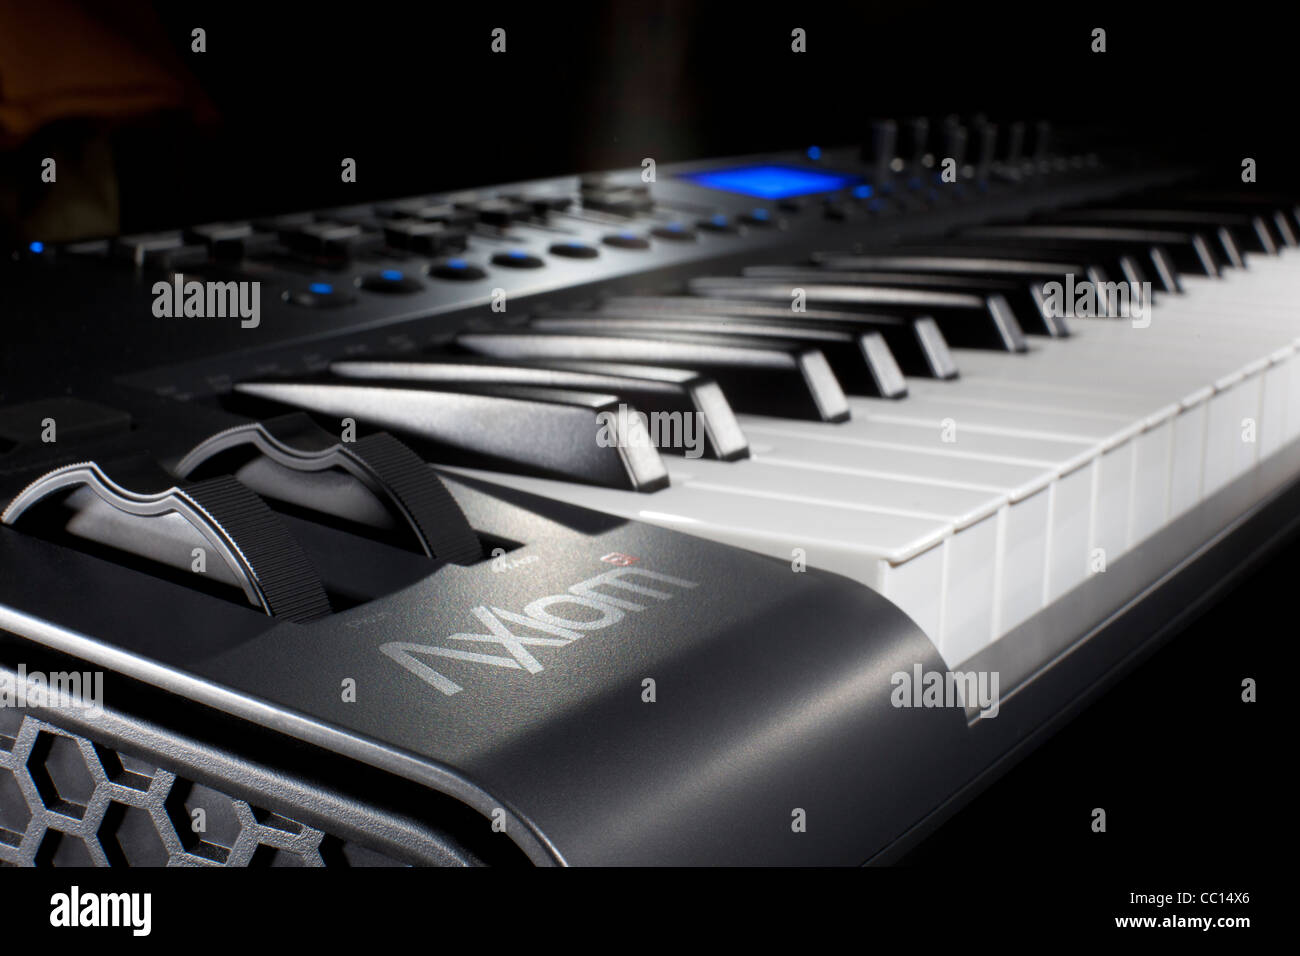 Axiom Piano 64 key midi keyboard piano Stock Photo - Alamy